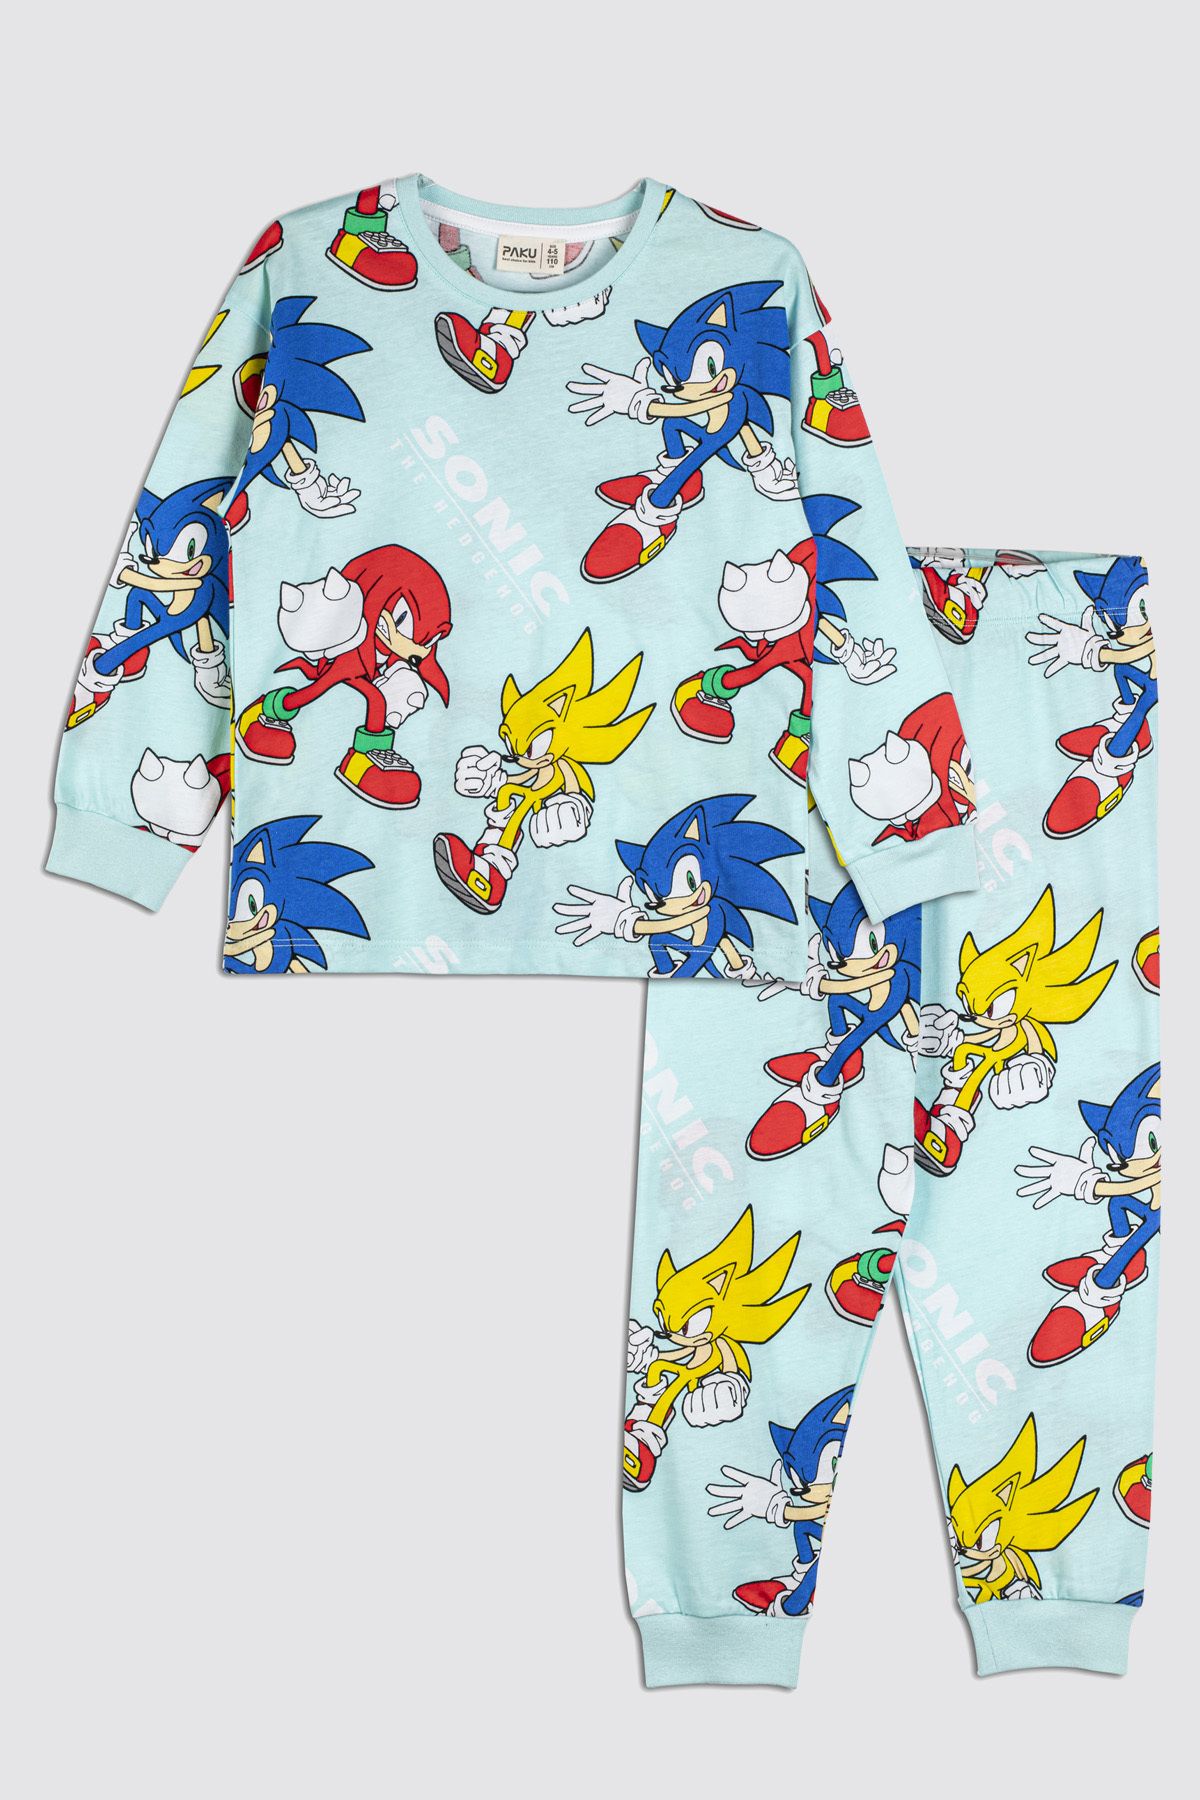 ZUZUNGA The Hedgehog Super Sonic Desenli %100 Pamuk Çocuk Pijama Takımı